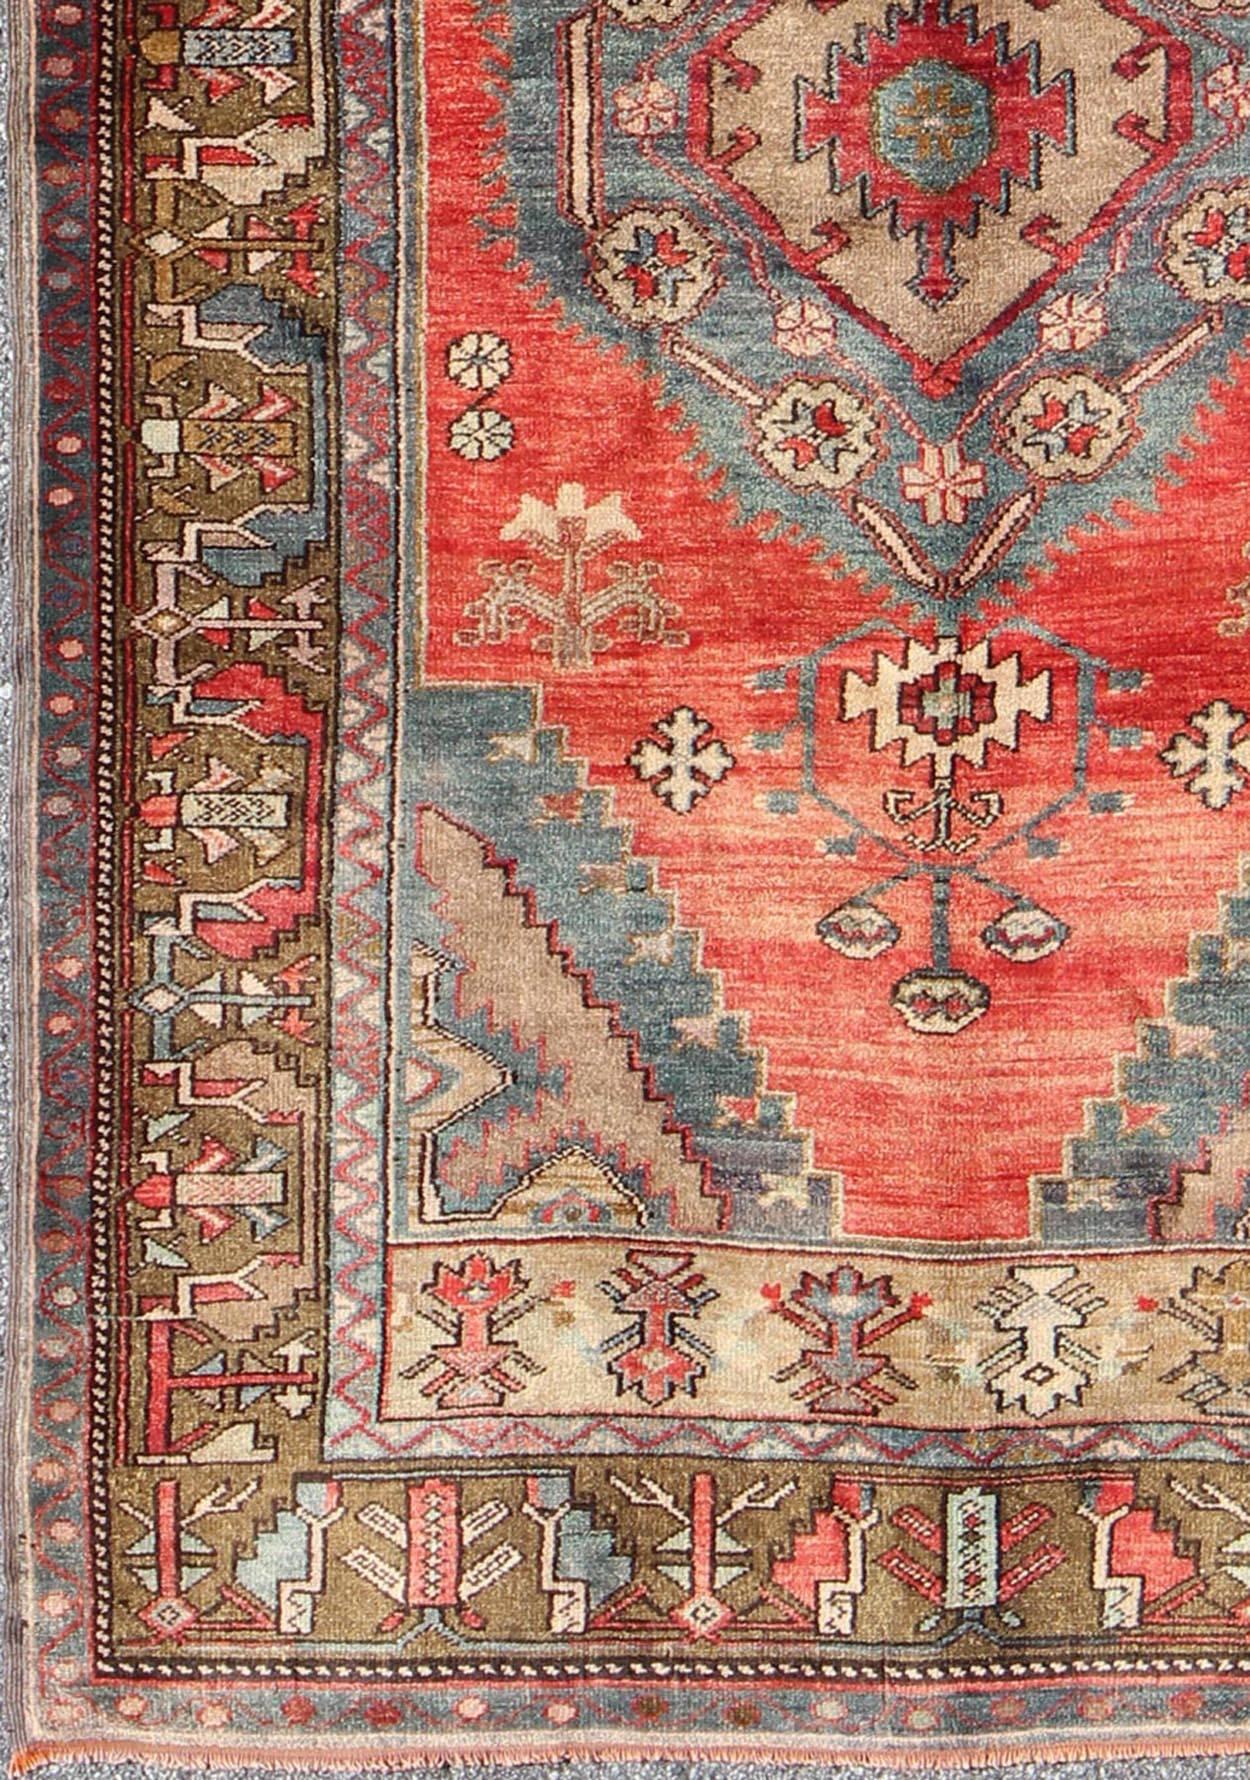 Türkischer Konya-Teppich mit geometrischem Muster rug/tu-sim-1
 herkunft/Türkei 

Dieser schöne antike Konya-Teppich weist ein klassisches Medaillonmuster auf. Auf dem zartroten Grund befindet sich das zentrale Medaillon, das von verschiedenen